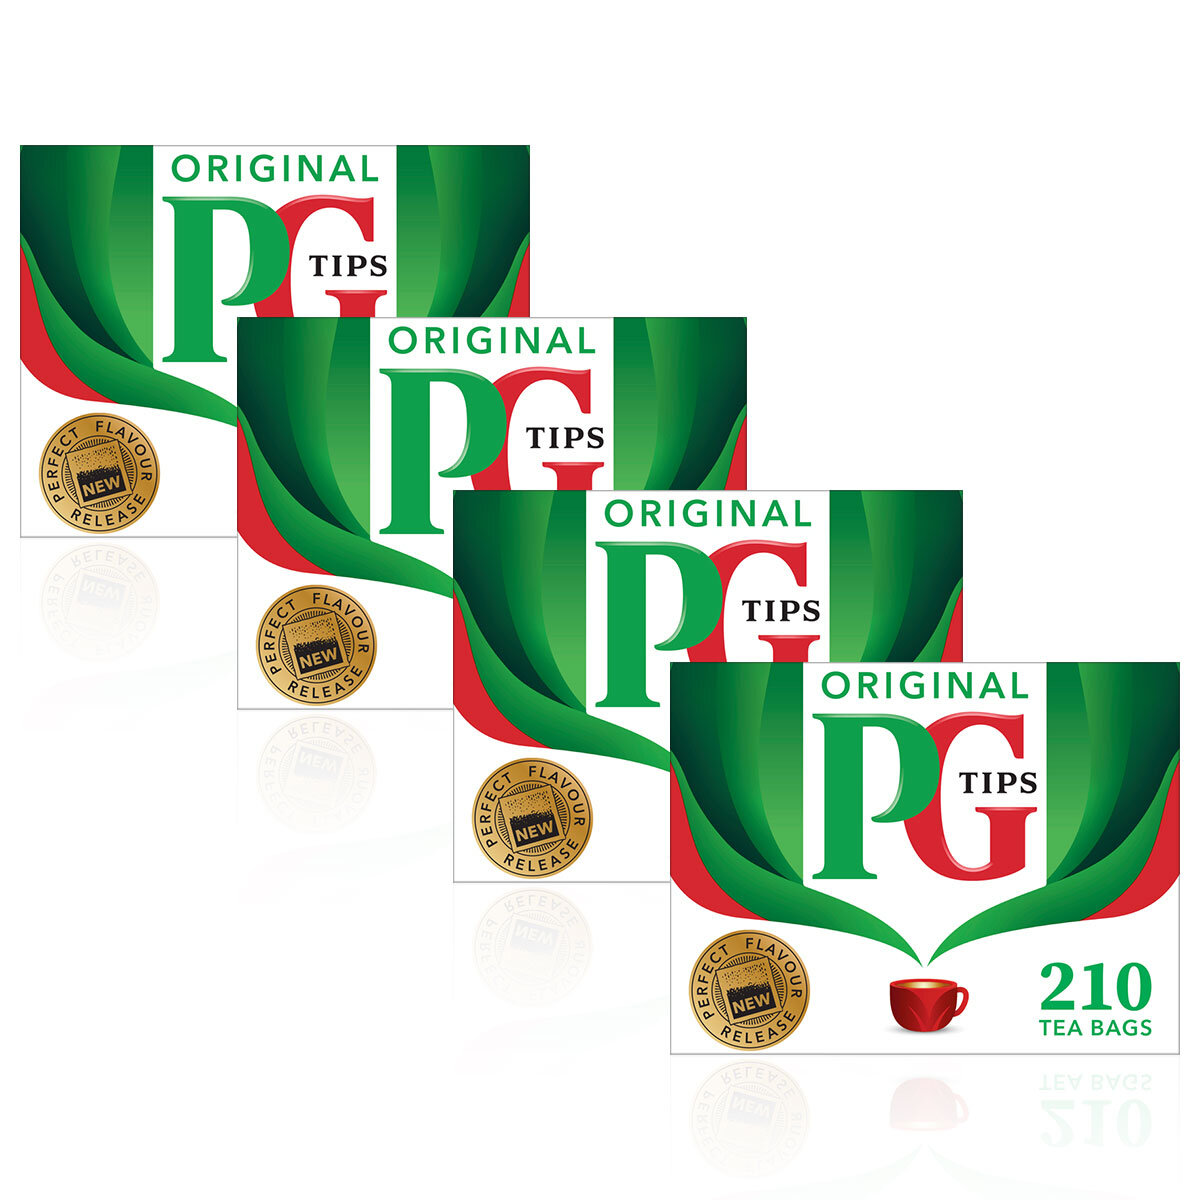 PG Tips Tea Bags, 4 x 210 Pack